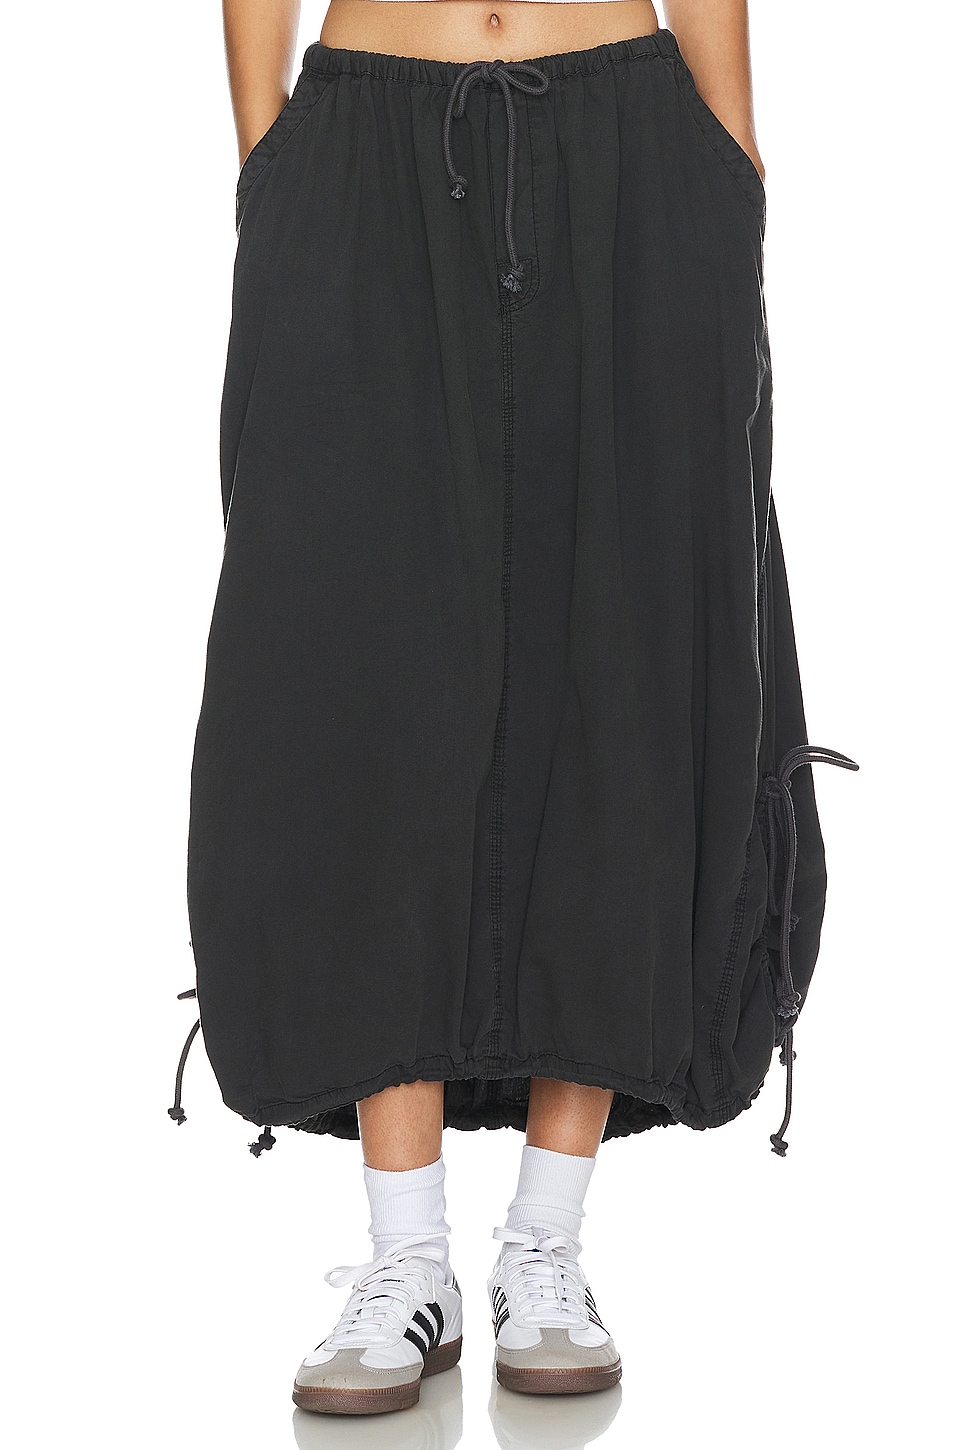 Parachute Skirt - Black